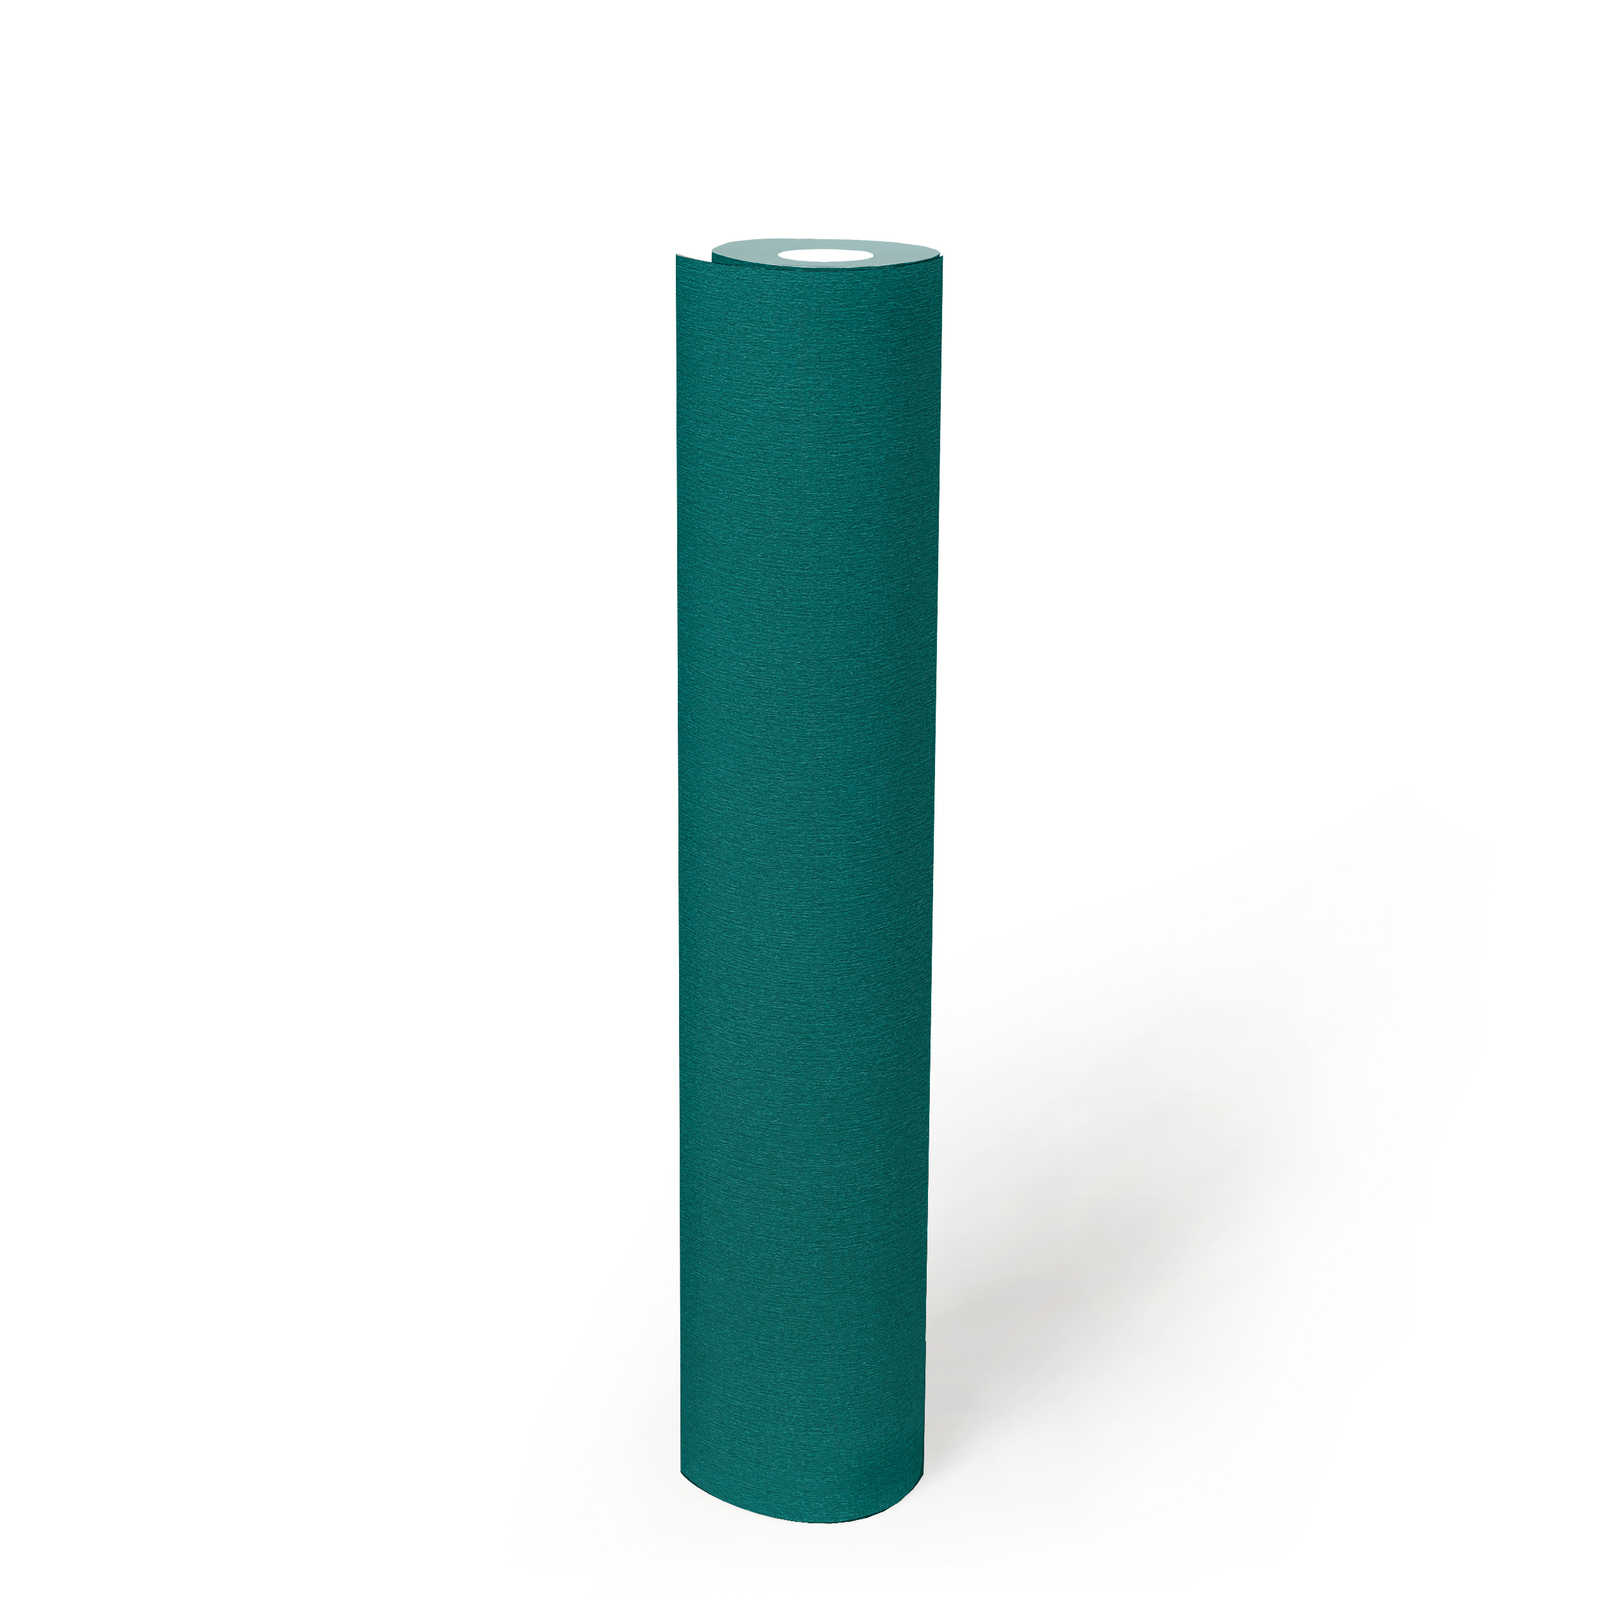             Papier peint turquoise vert pétrole avec structure colorée
        